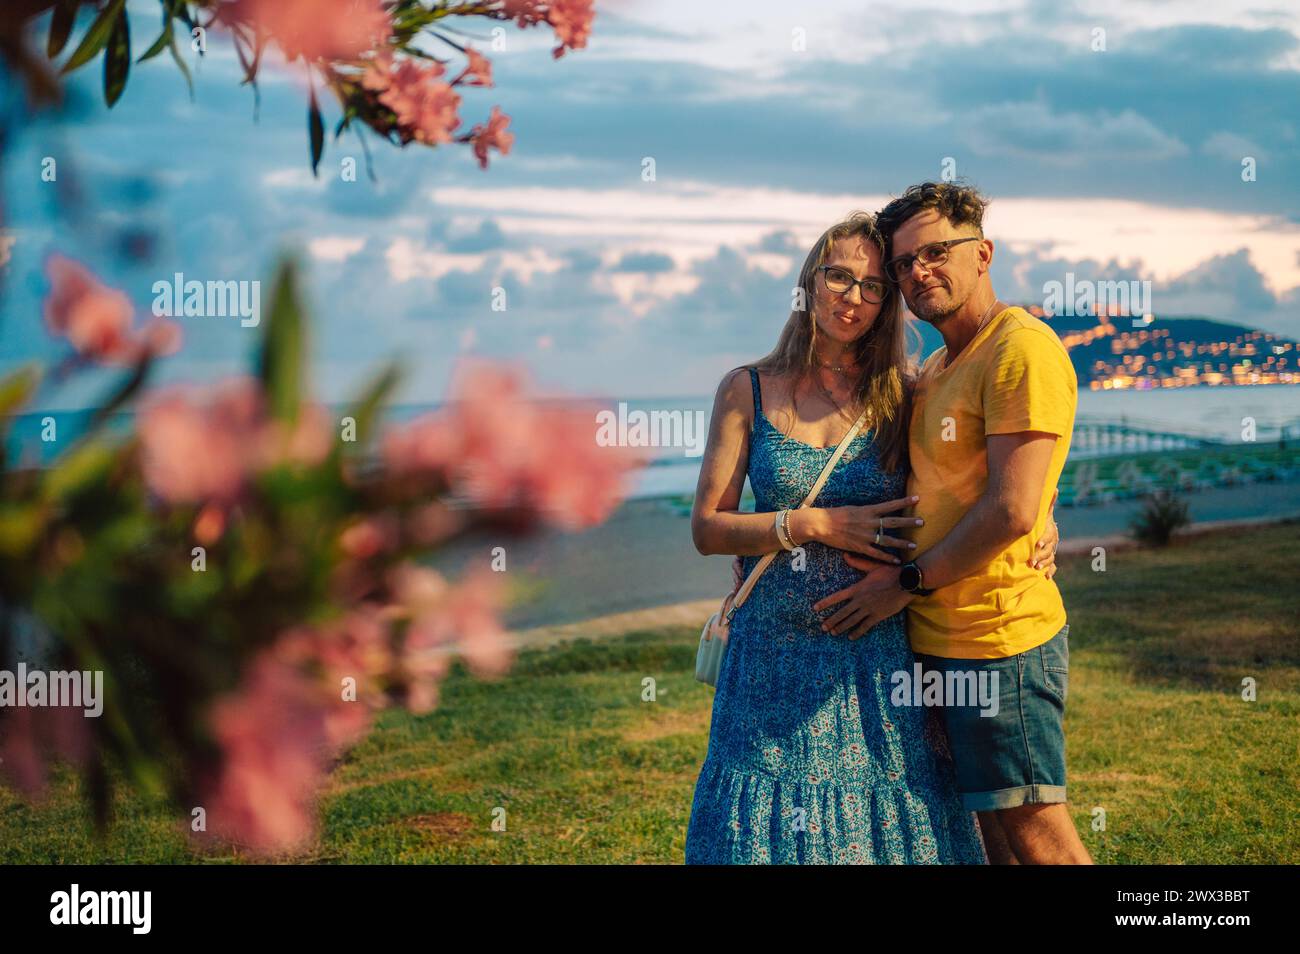 Glückliches Paar, das ein Foto an einem Strand am Meer in Alanya City, Türkei macht. Konzentrieren Sie sich auf den Hintergrund. Reise- oder Urlaubskonzept Stockfoto